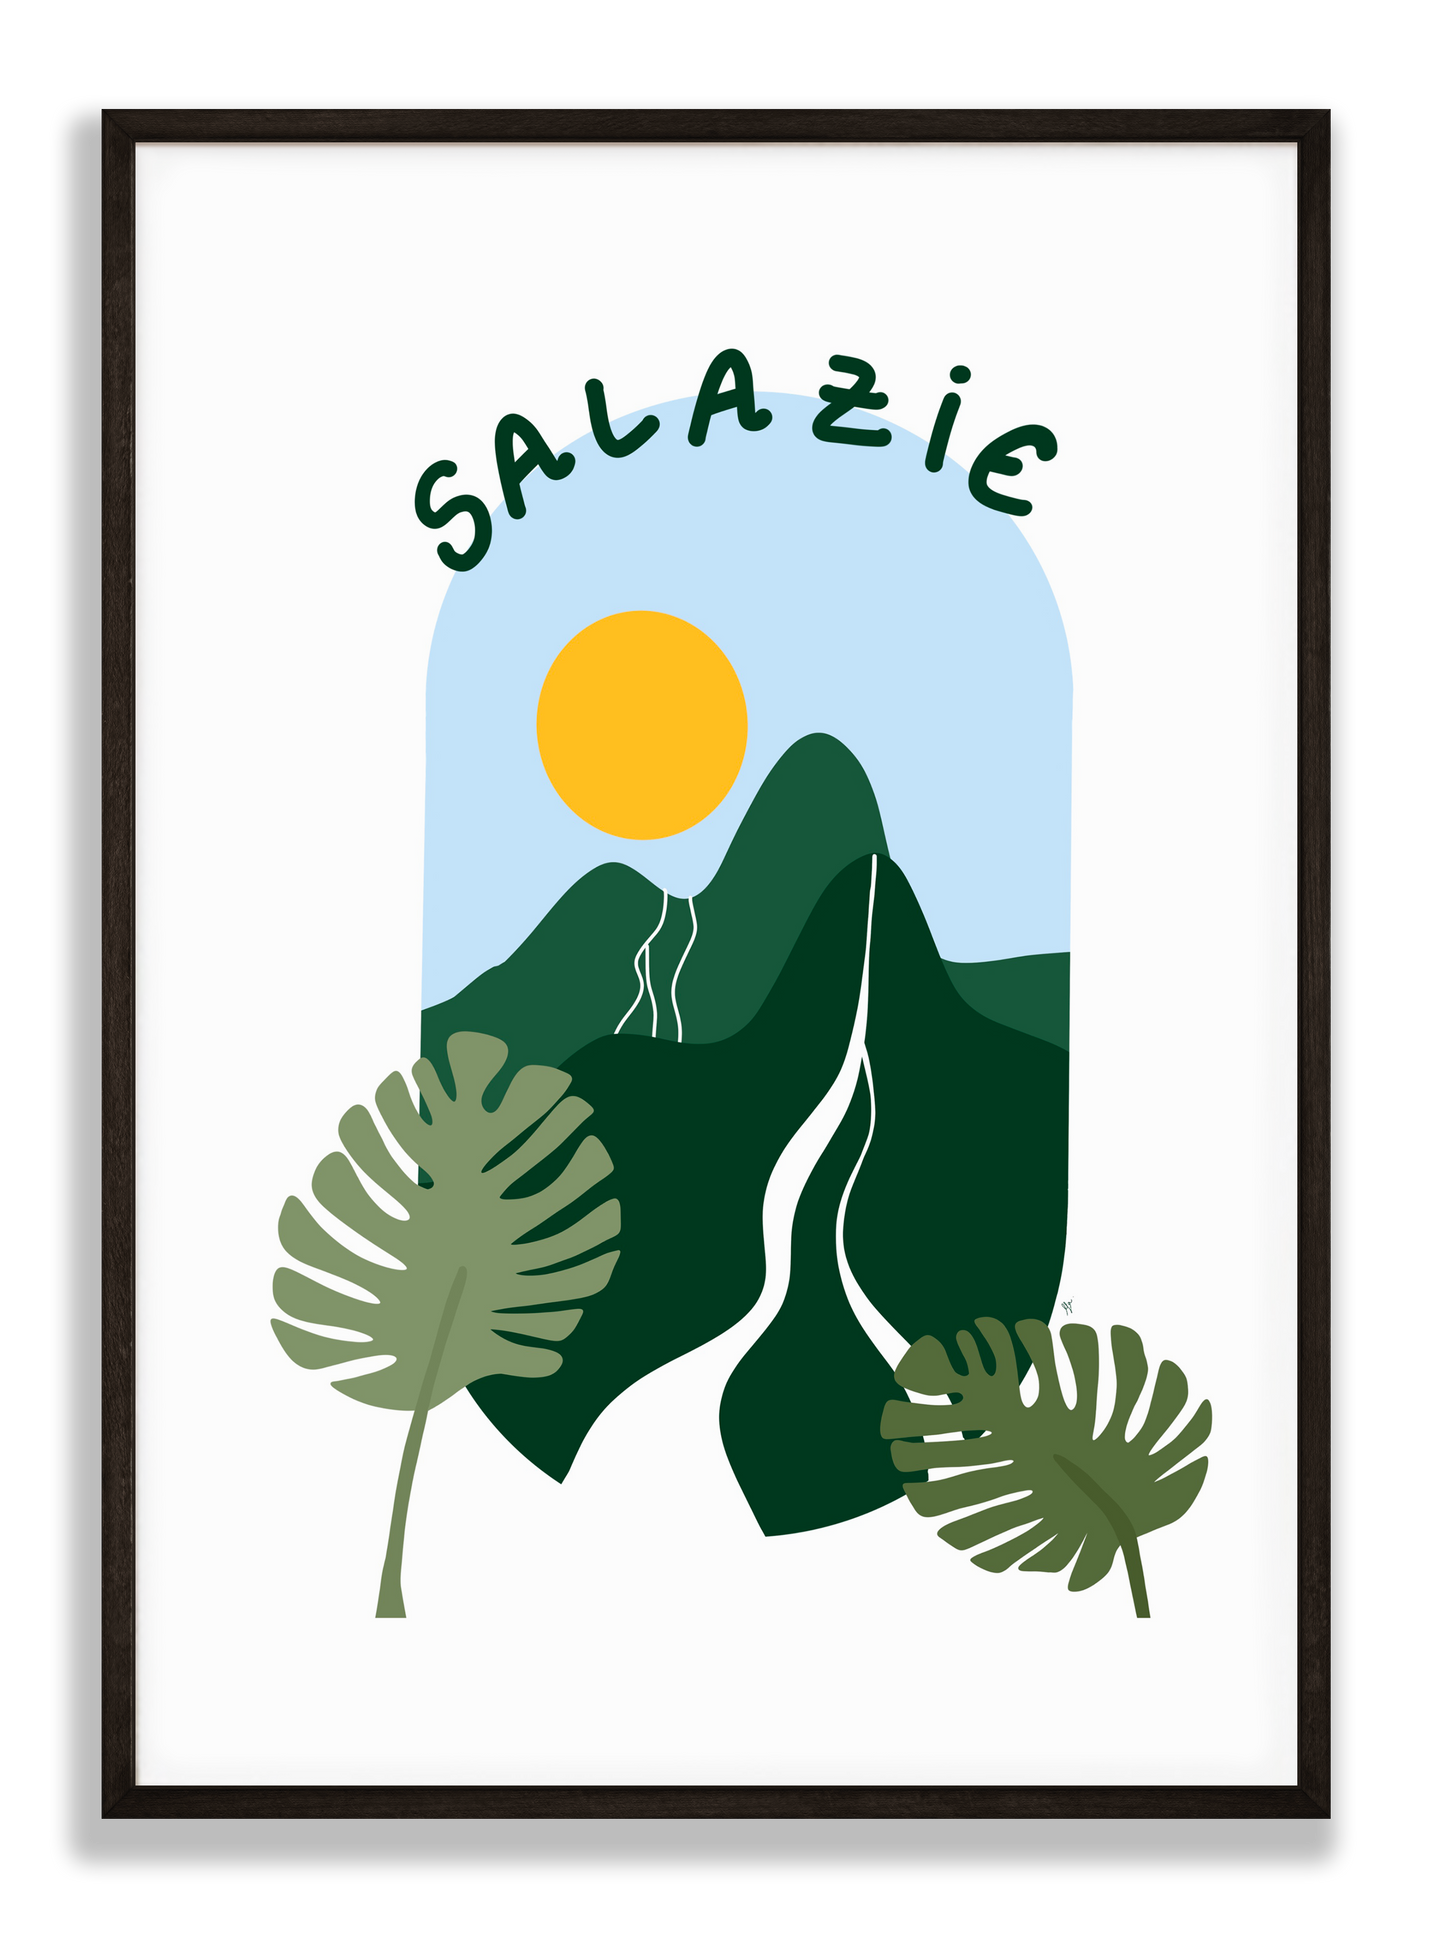 Salazie